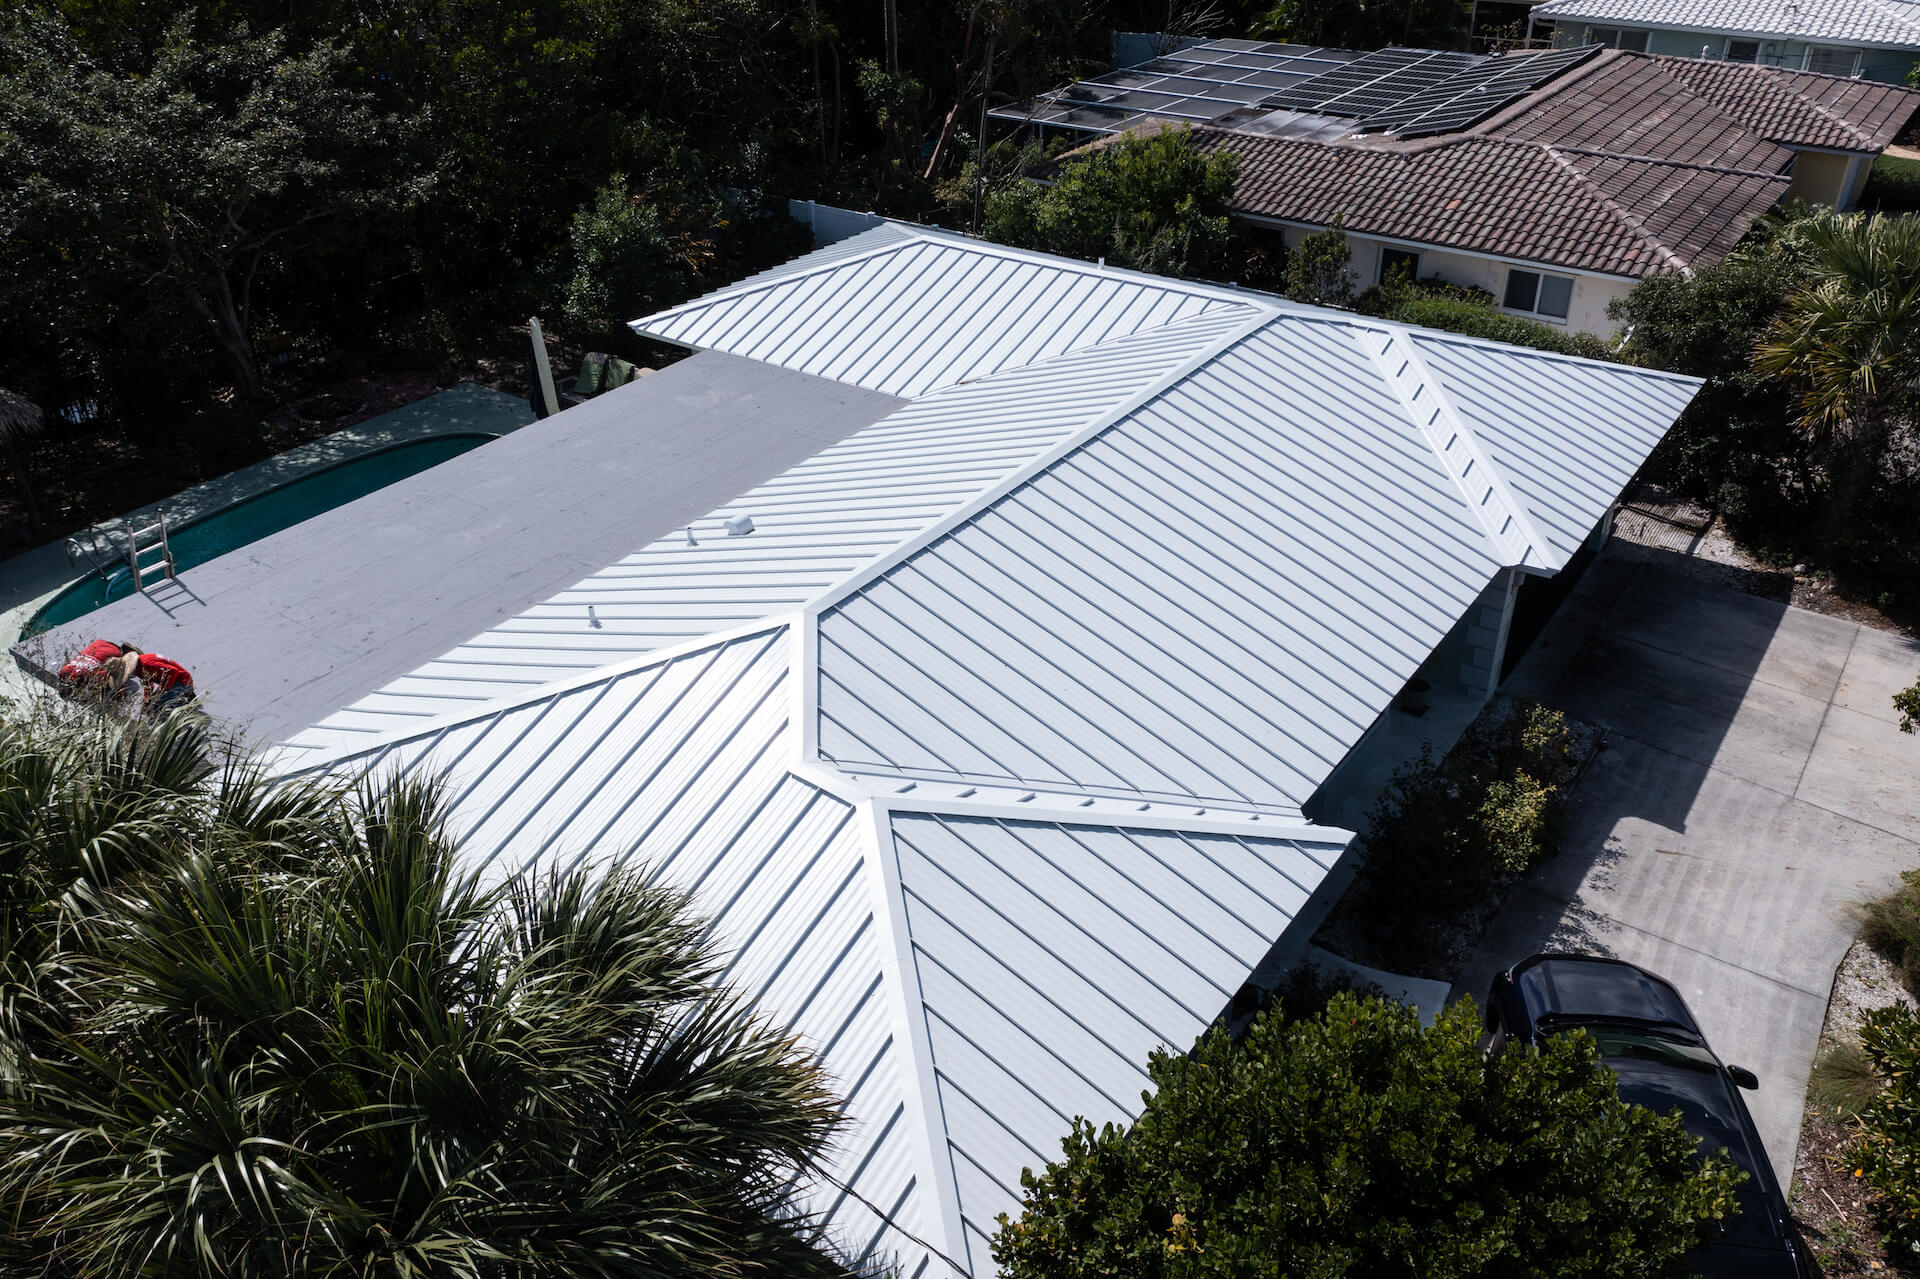 Deerfield Beach Metal Tile roofing company